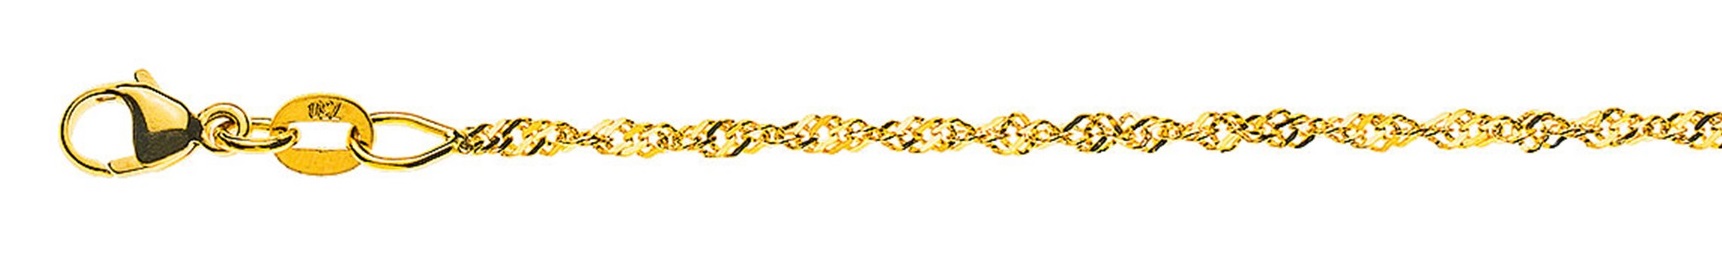 AURONOS Prestige Halskette Gelbgold 18K Singapurkette 40cm 1.5mm